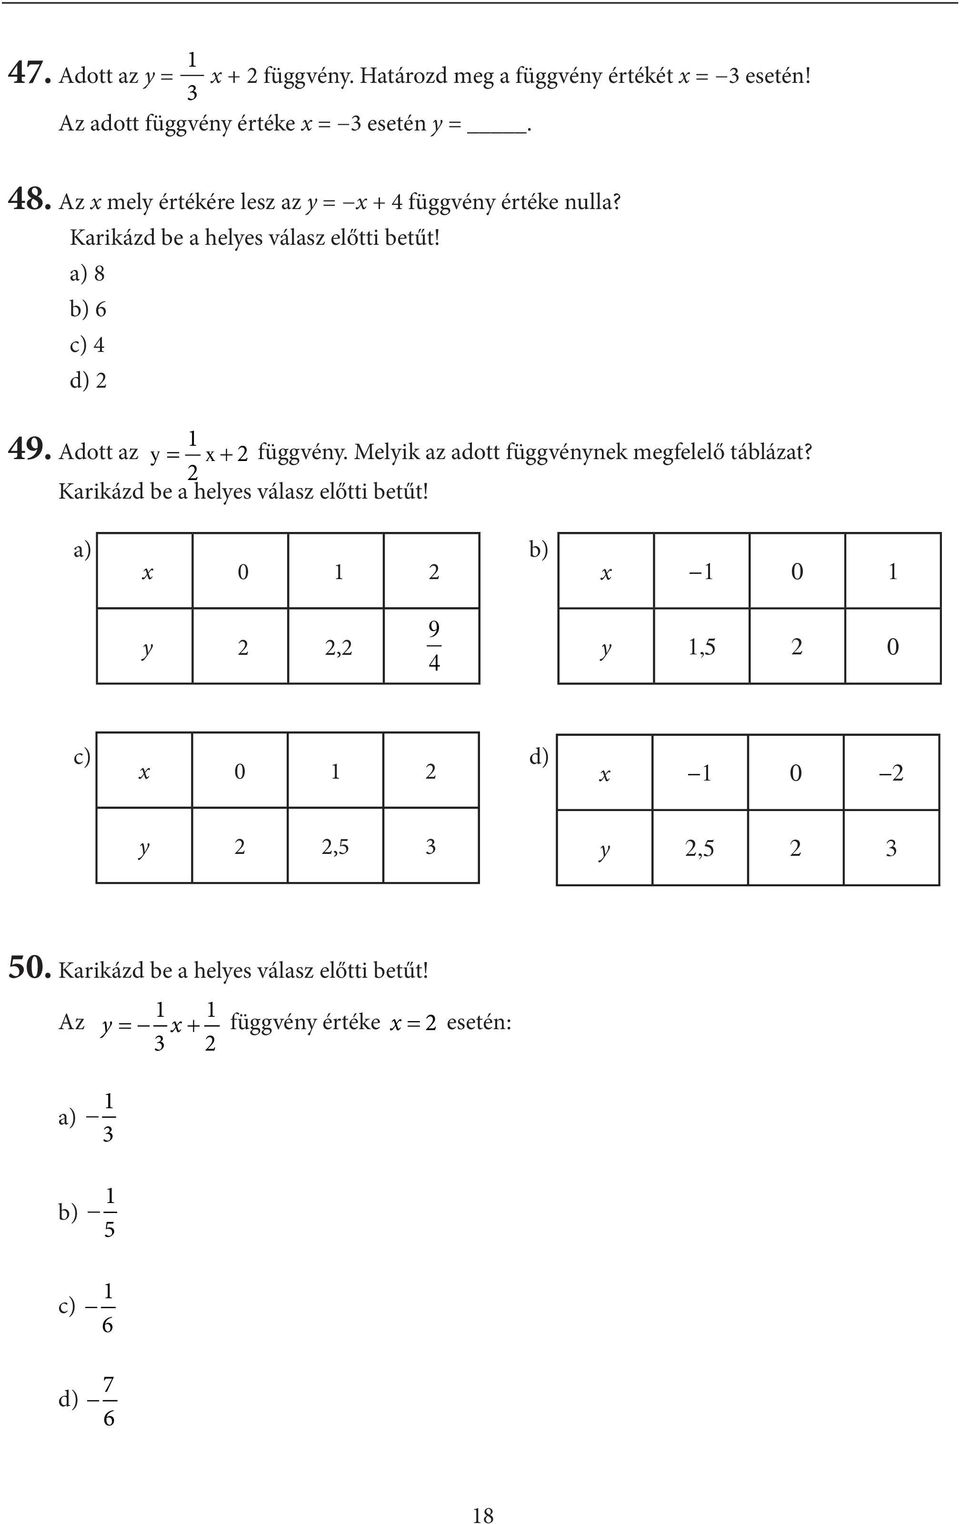 Adott az = x + y függvény. Melyik az adott függvénynek megfelelő táblázat? Karikázd be a helyes válasz előtti betűt!